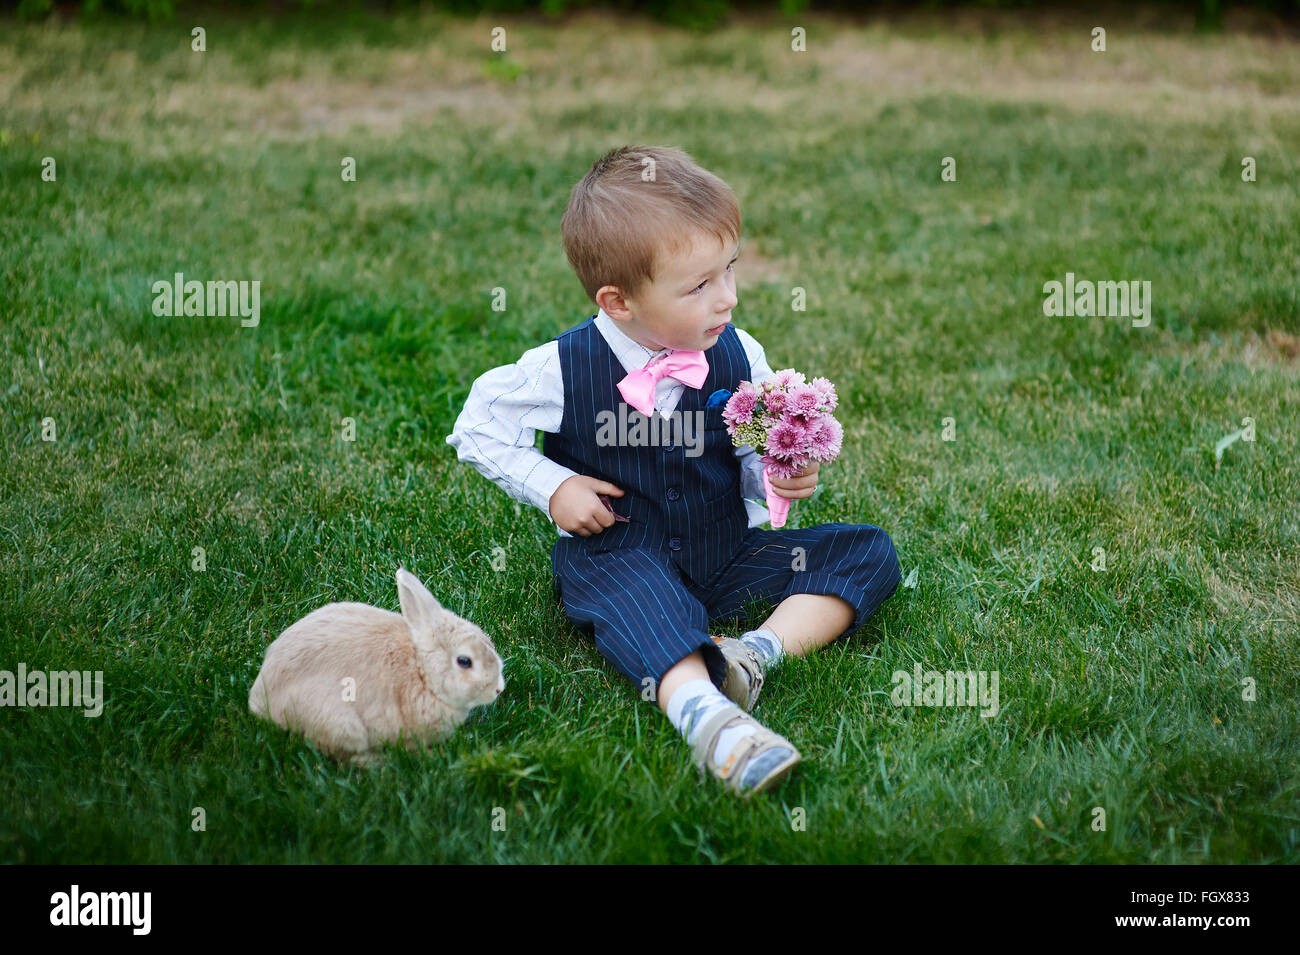 Little Boy in tuta con un mazzo di fiori e un coniglio Foto Stock